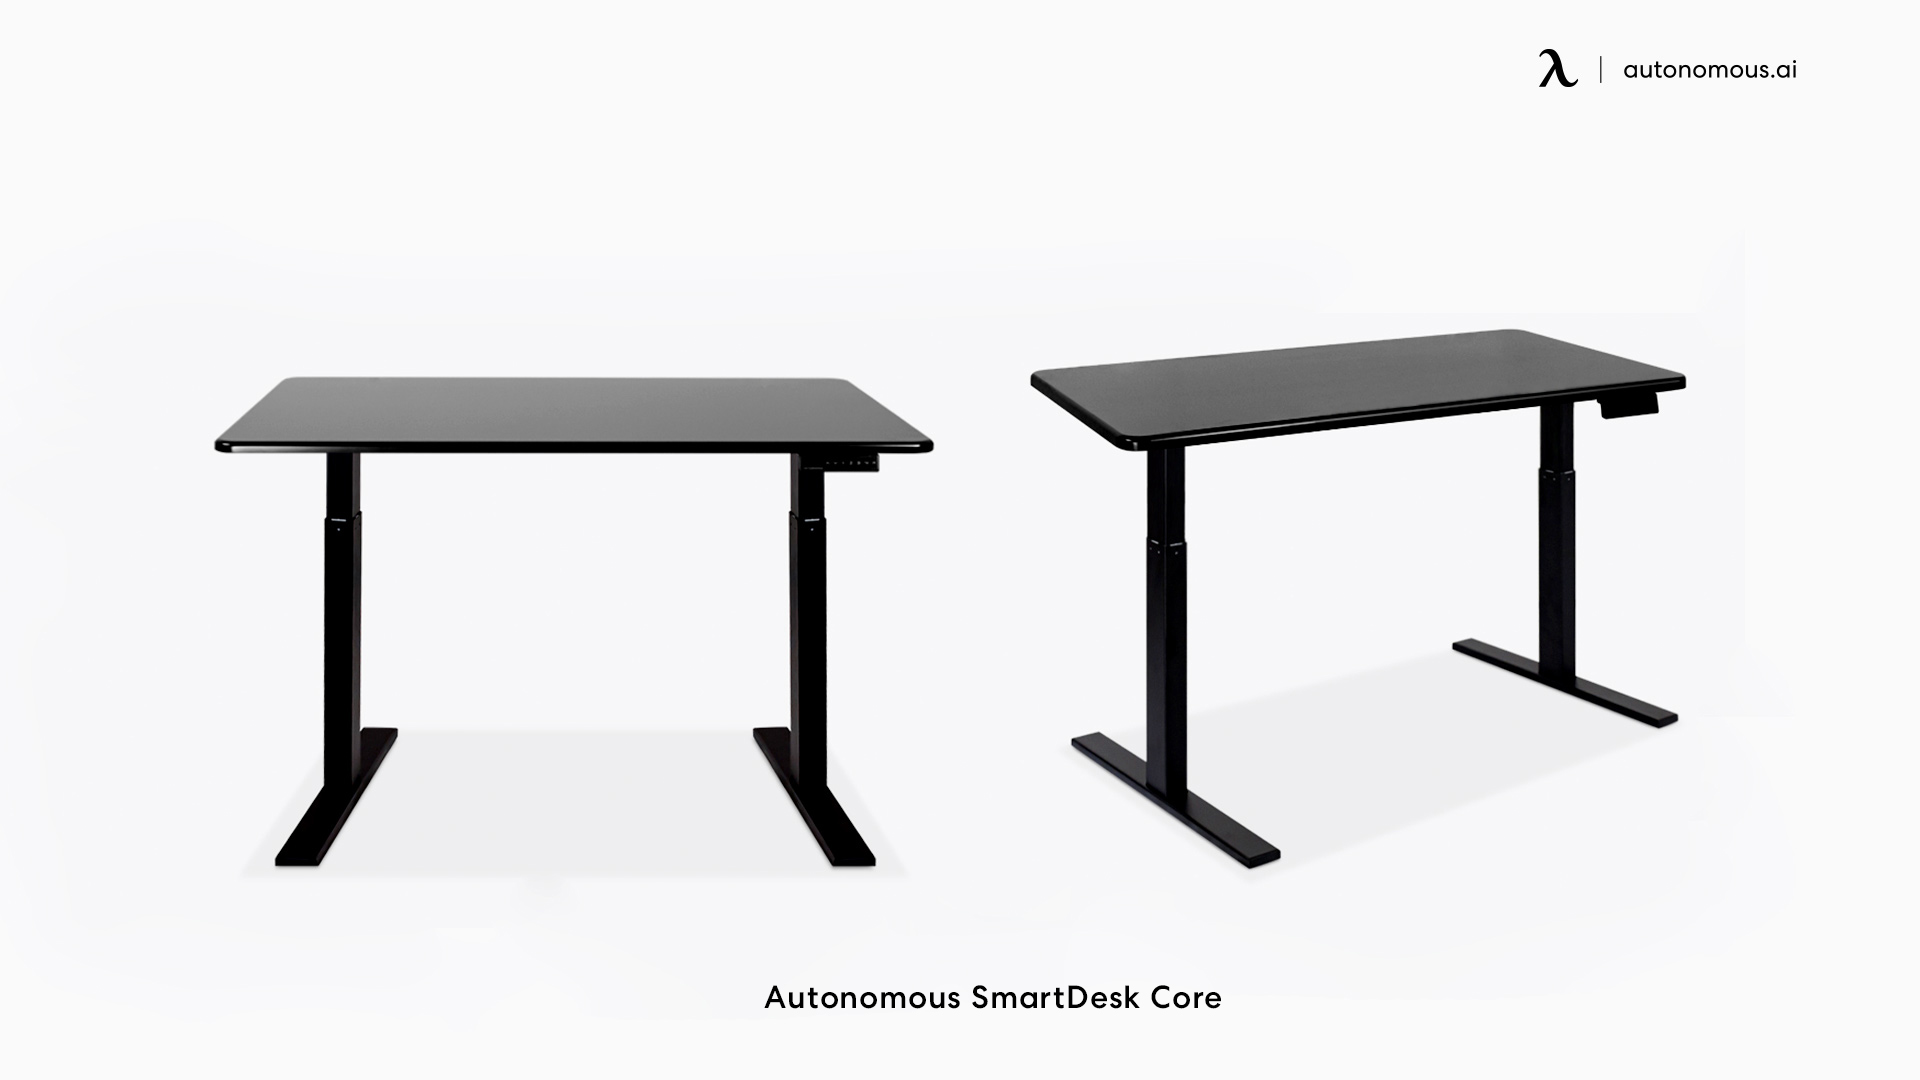 Autonomous SmartDesk Core feminine desks